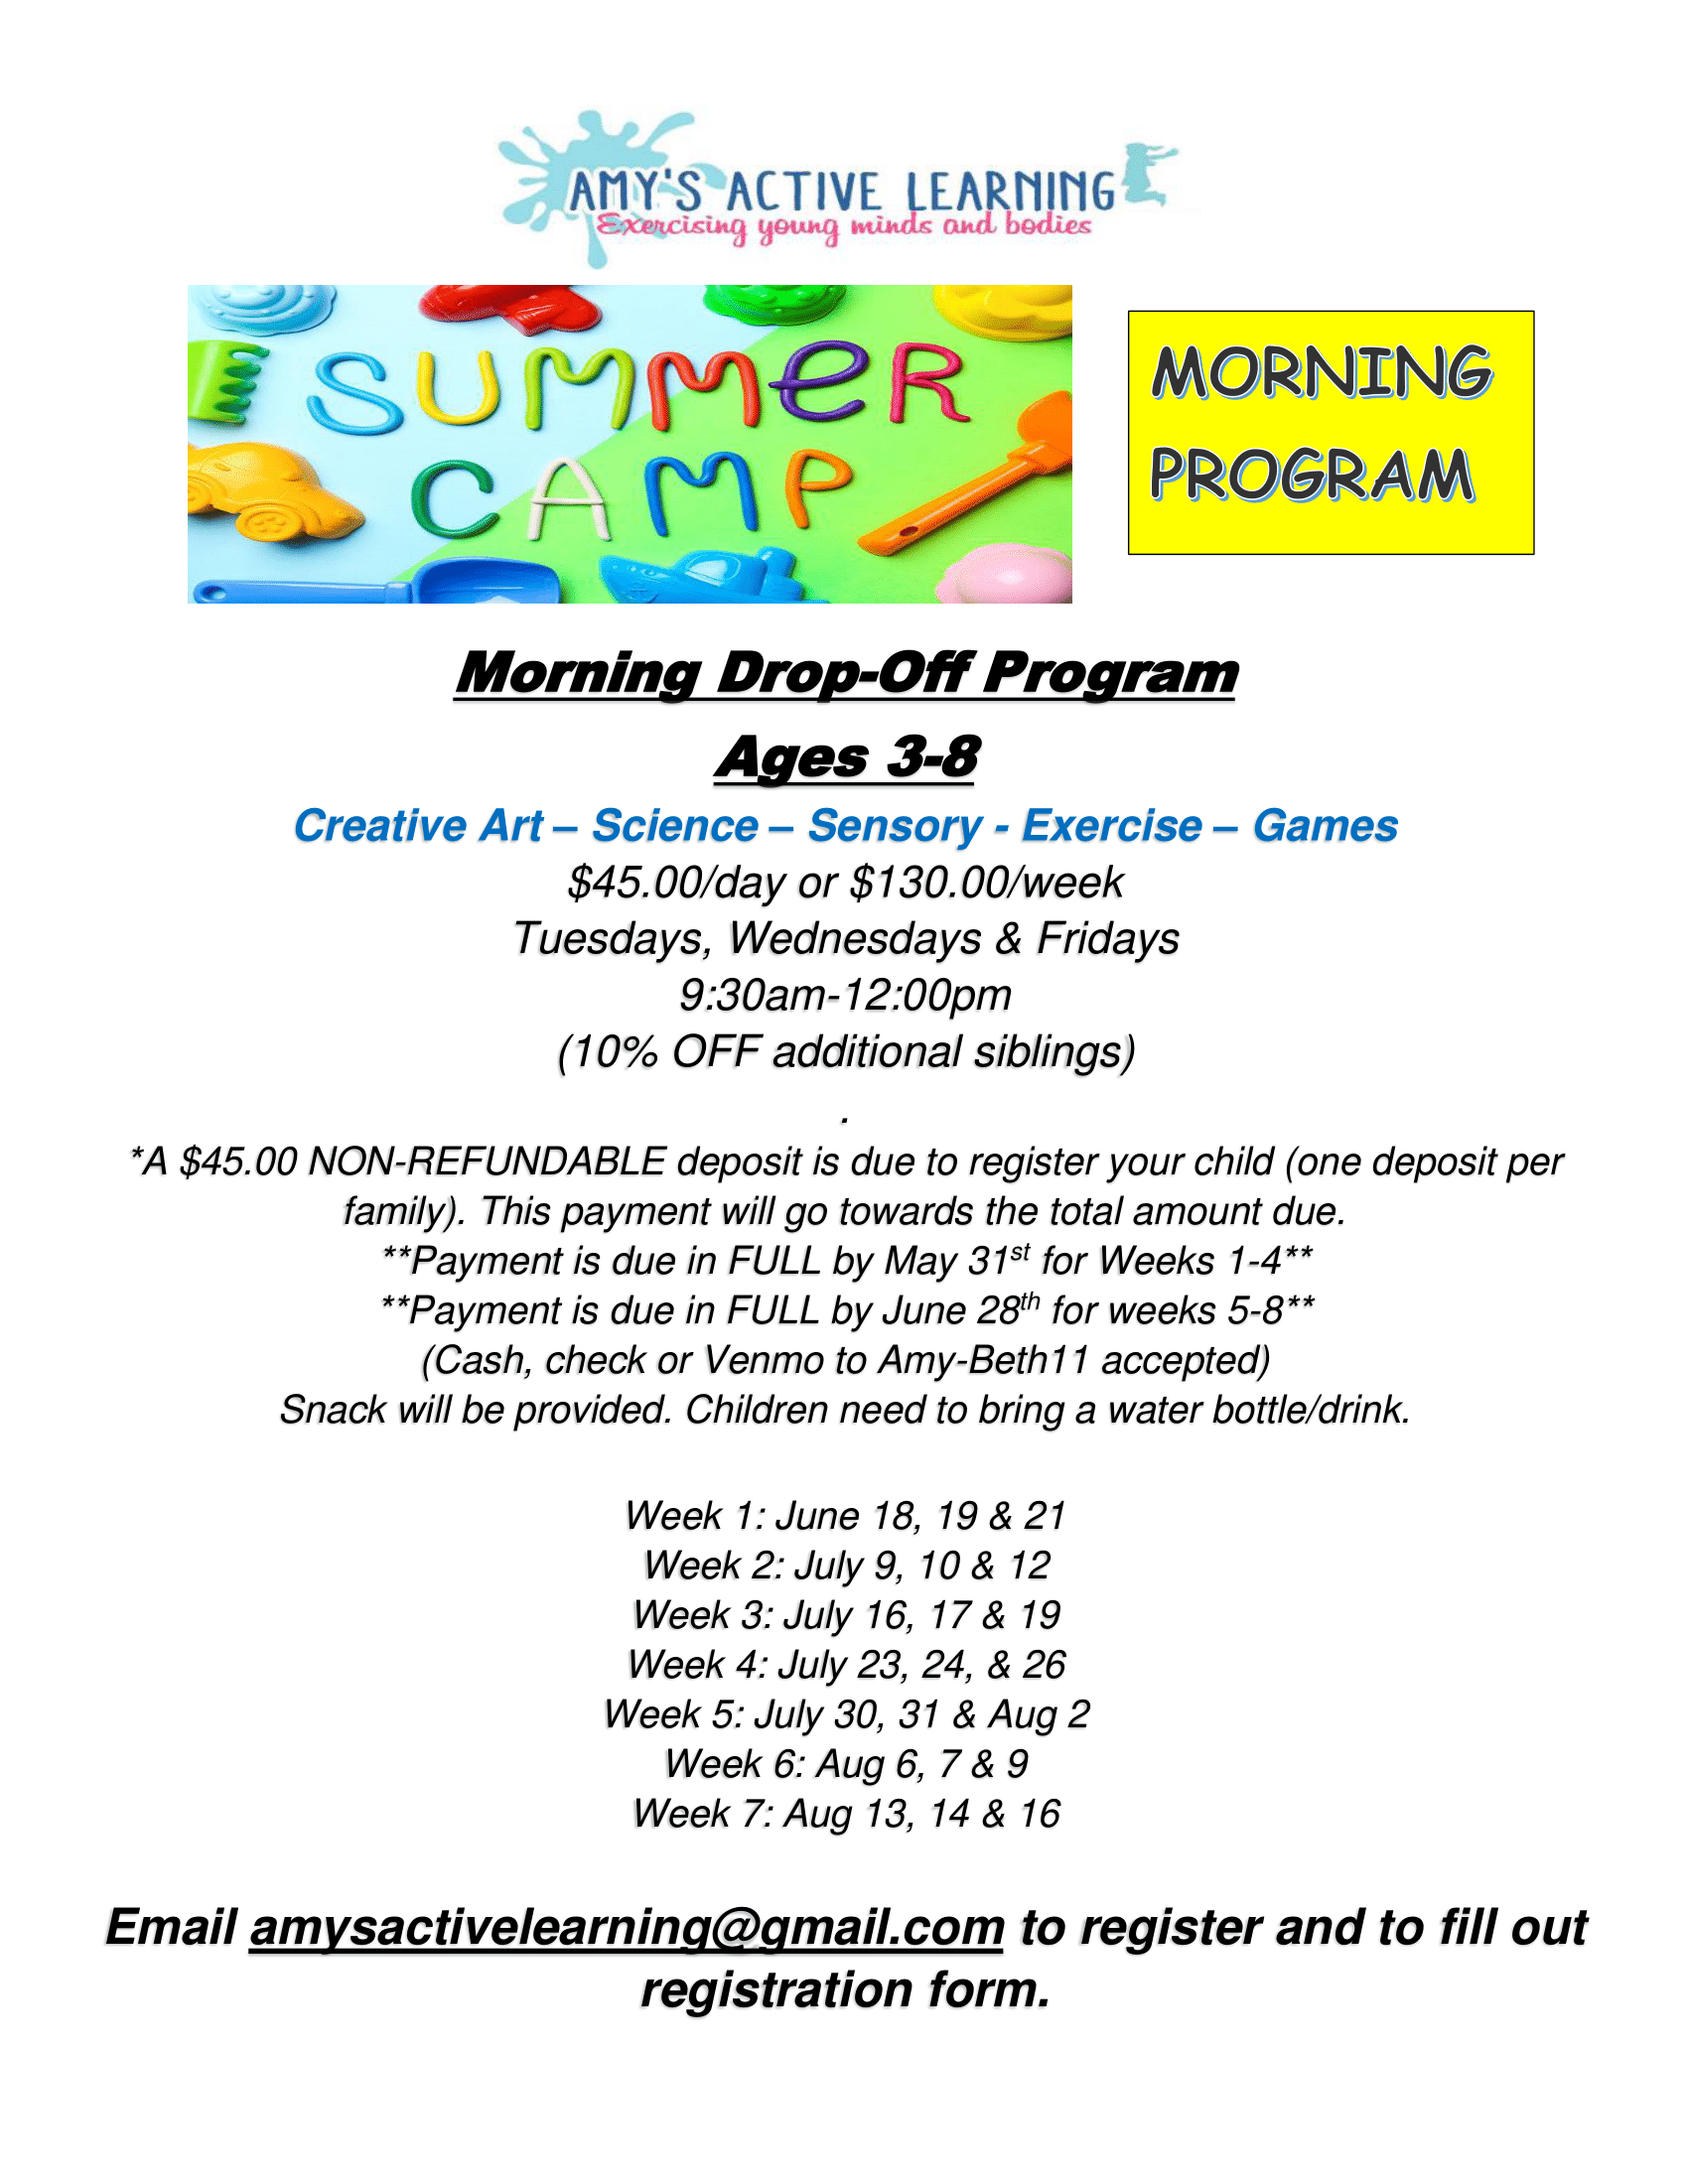 Summer Camp Morning Program